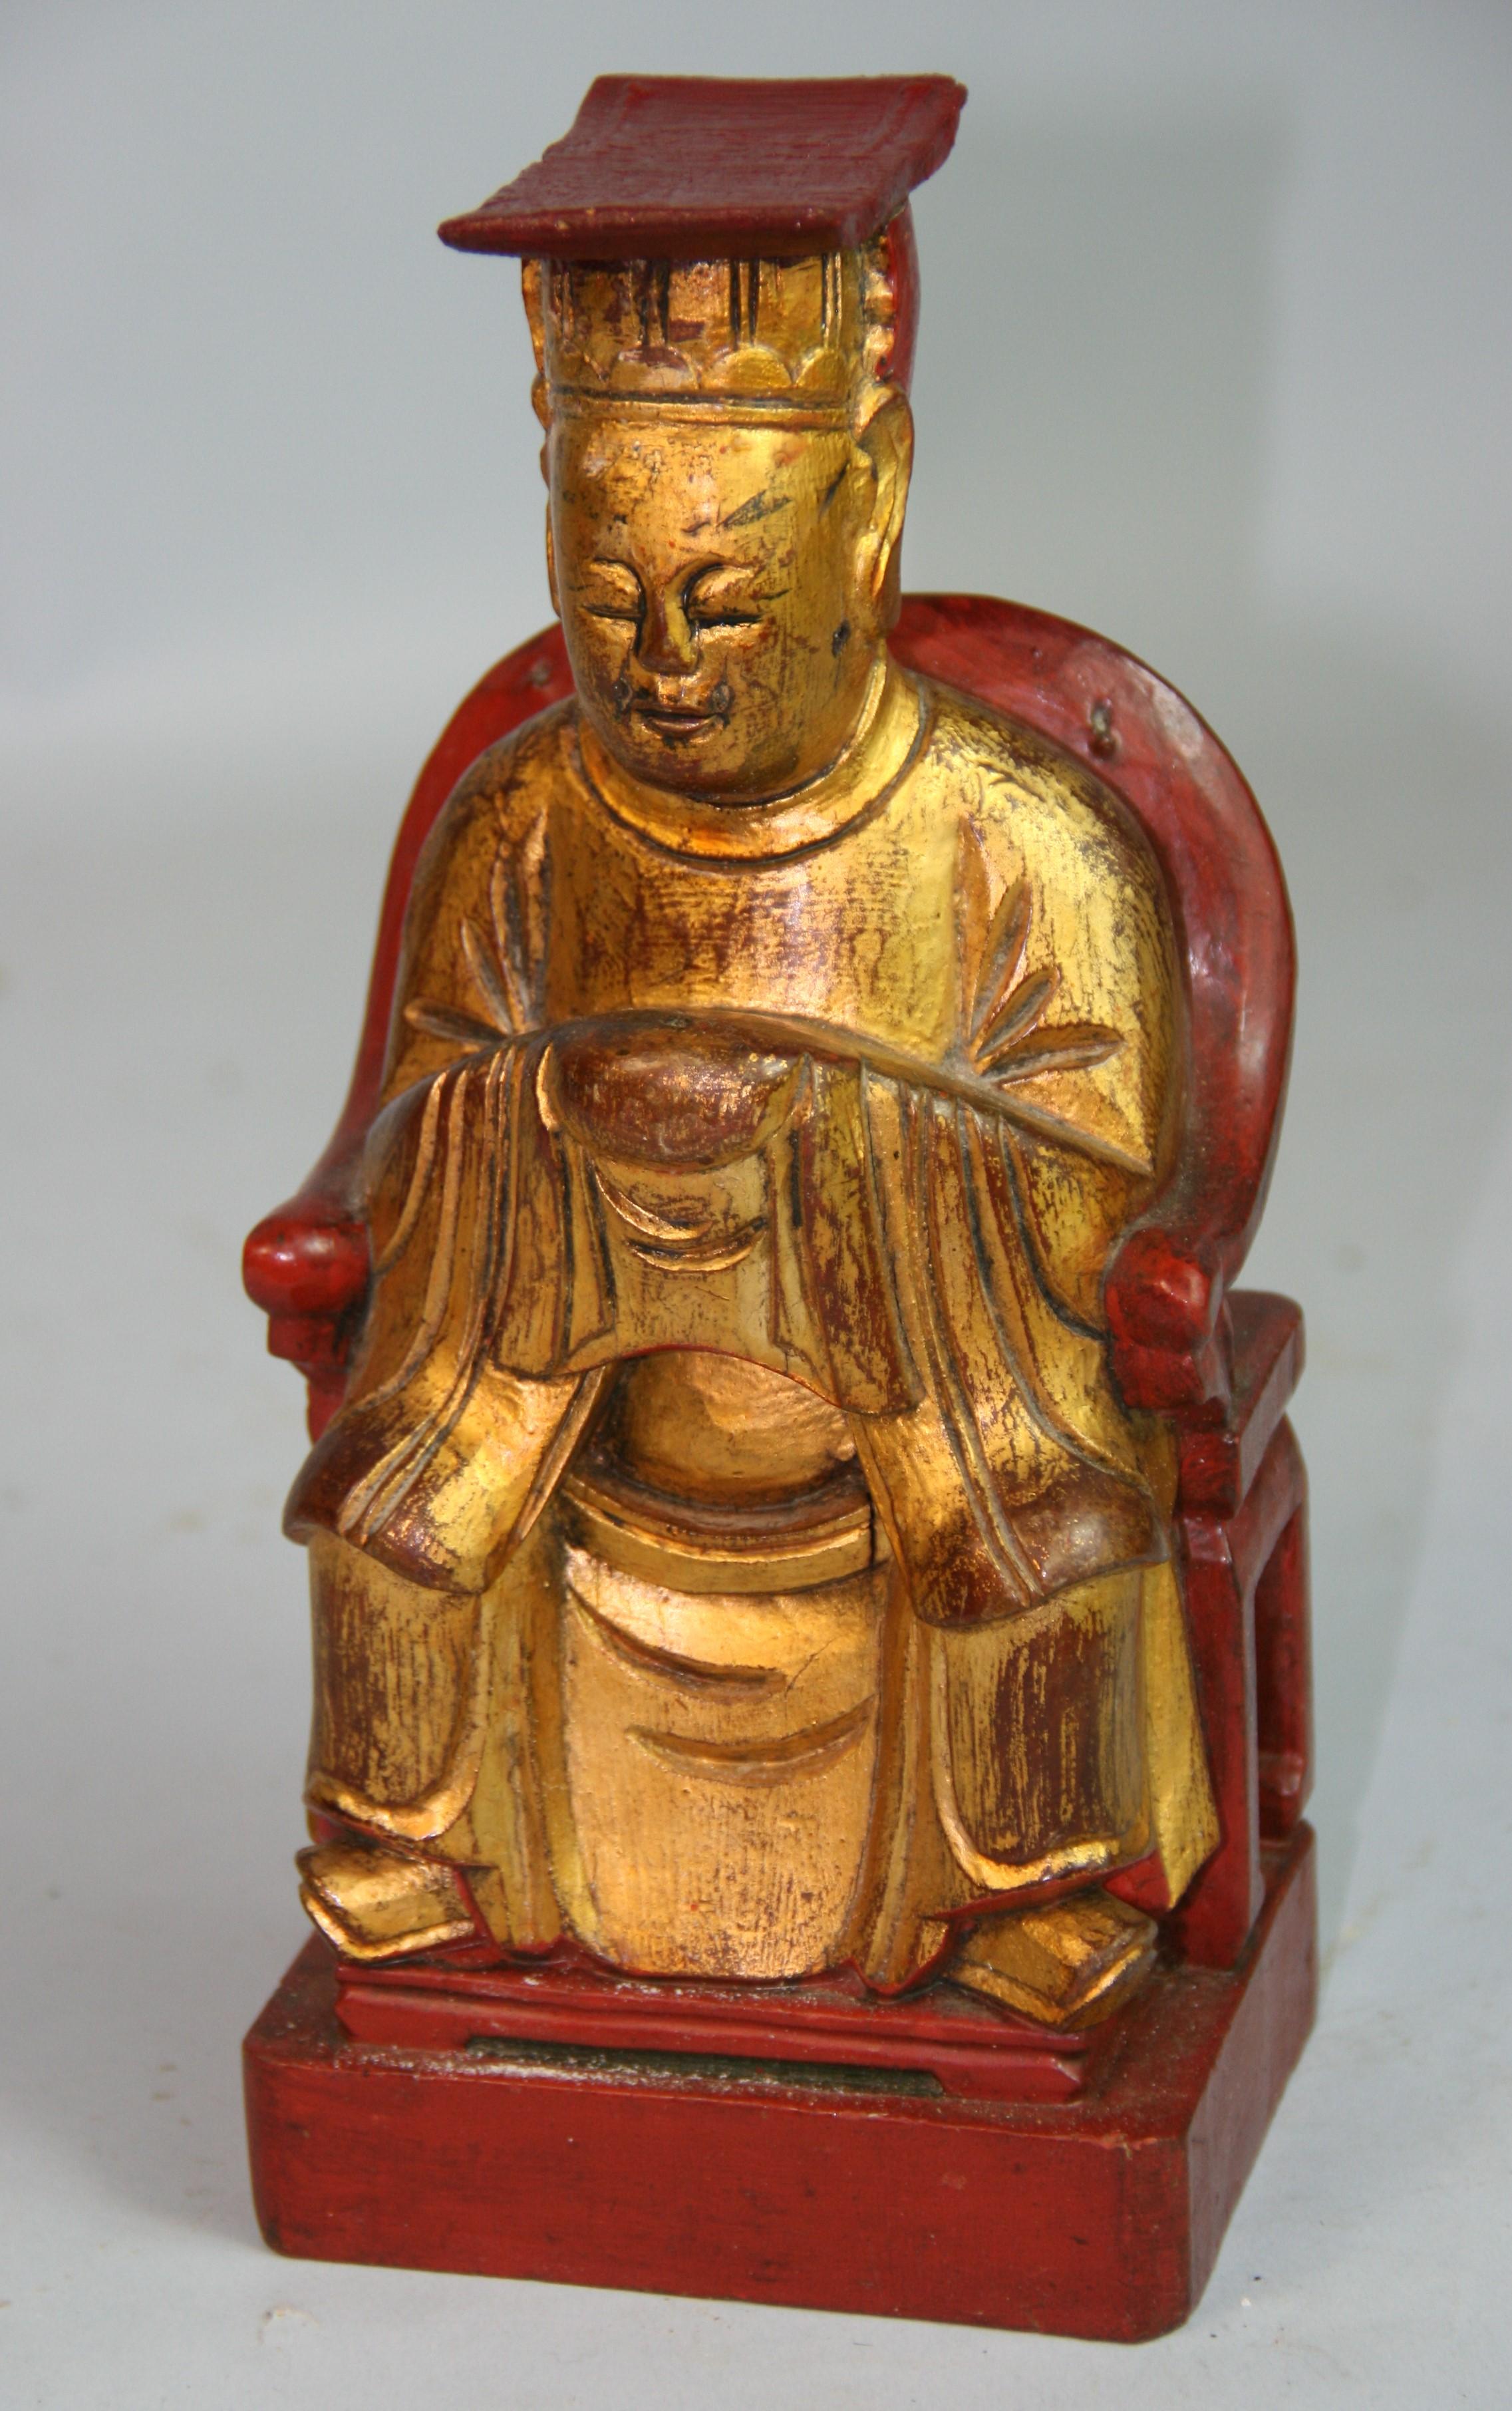 1492 Japanischer sitzender Buddha aus vergoldetem Holz mit verstecktem Fach im Rücken